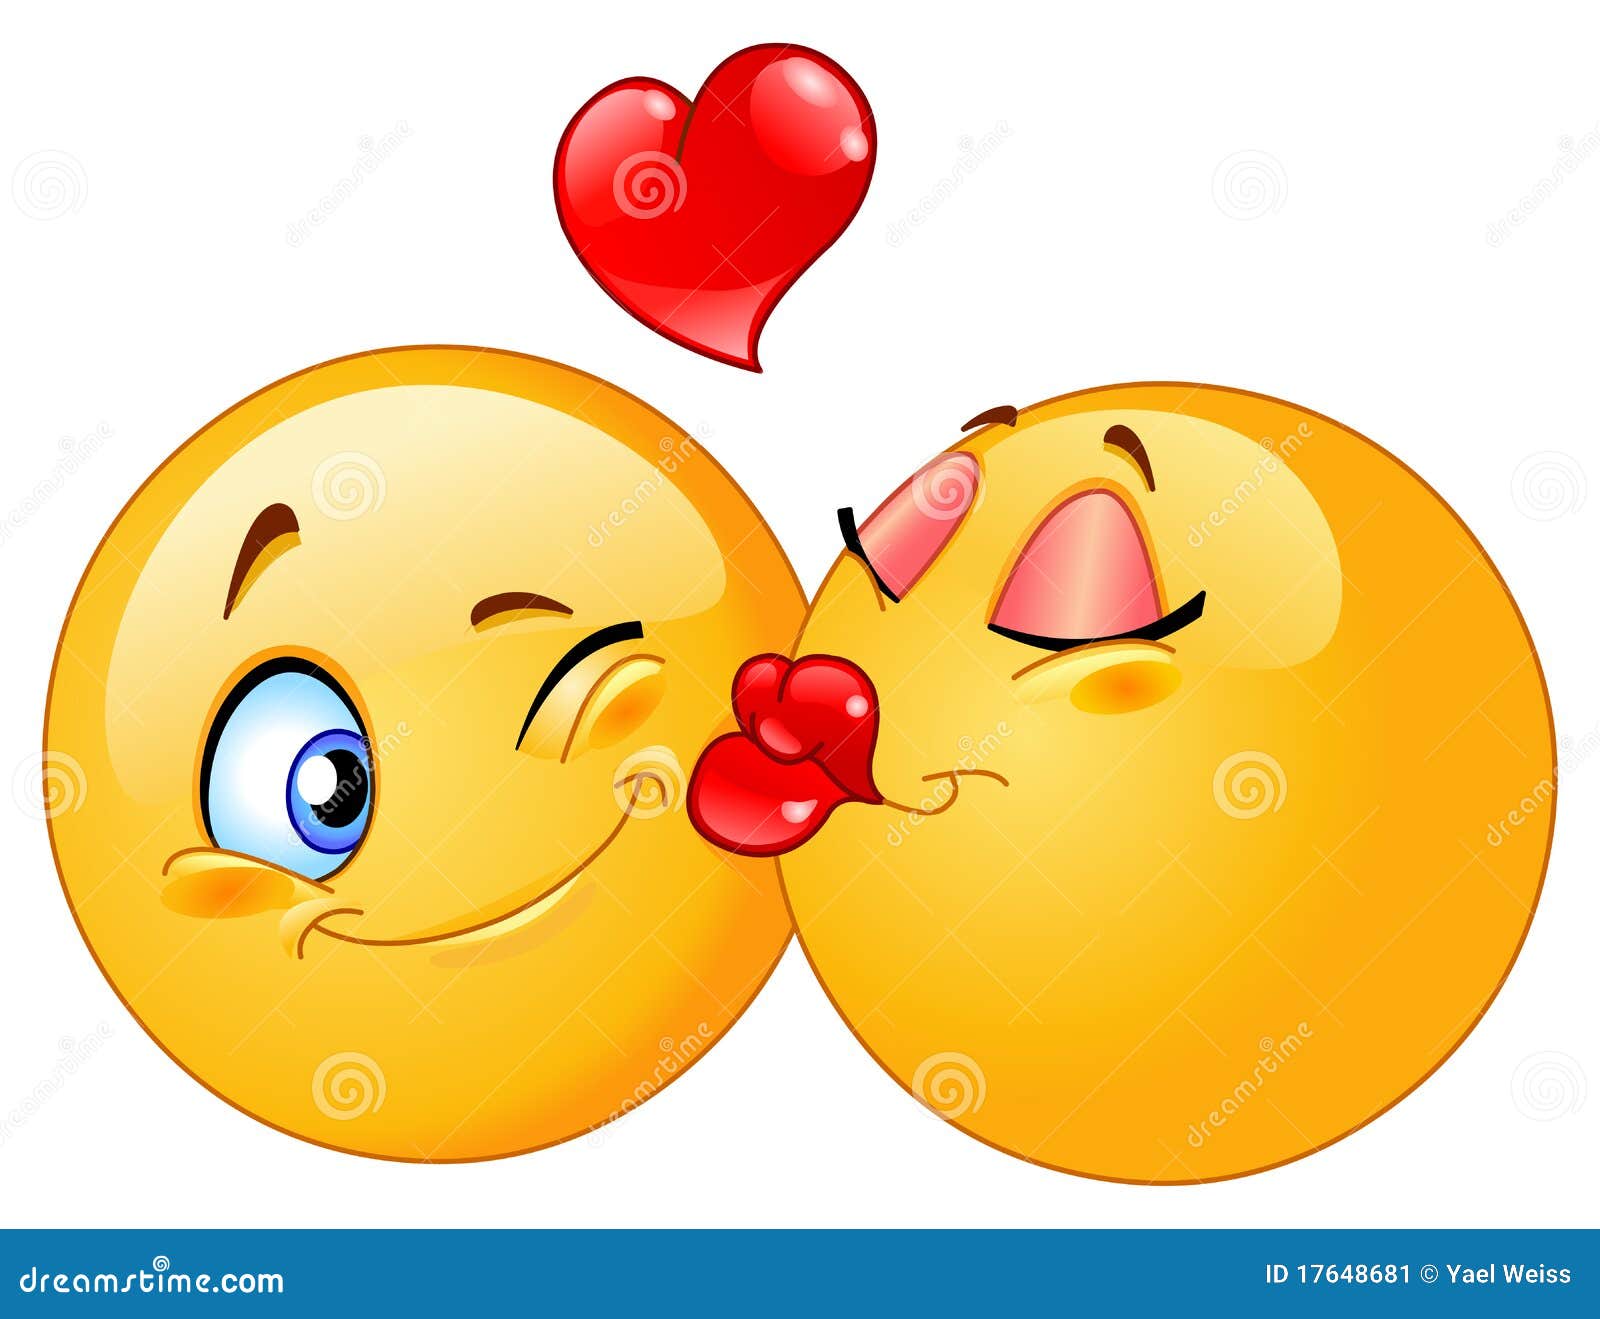 Ein kuss smiley herz bedeutet was mit Emoji Bedeutung: